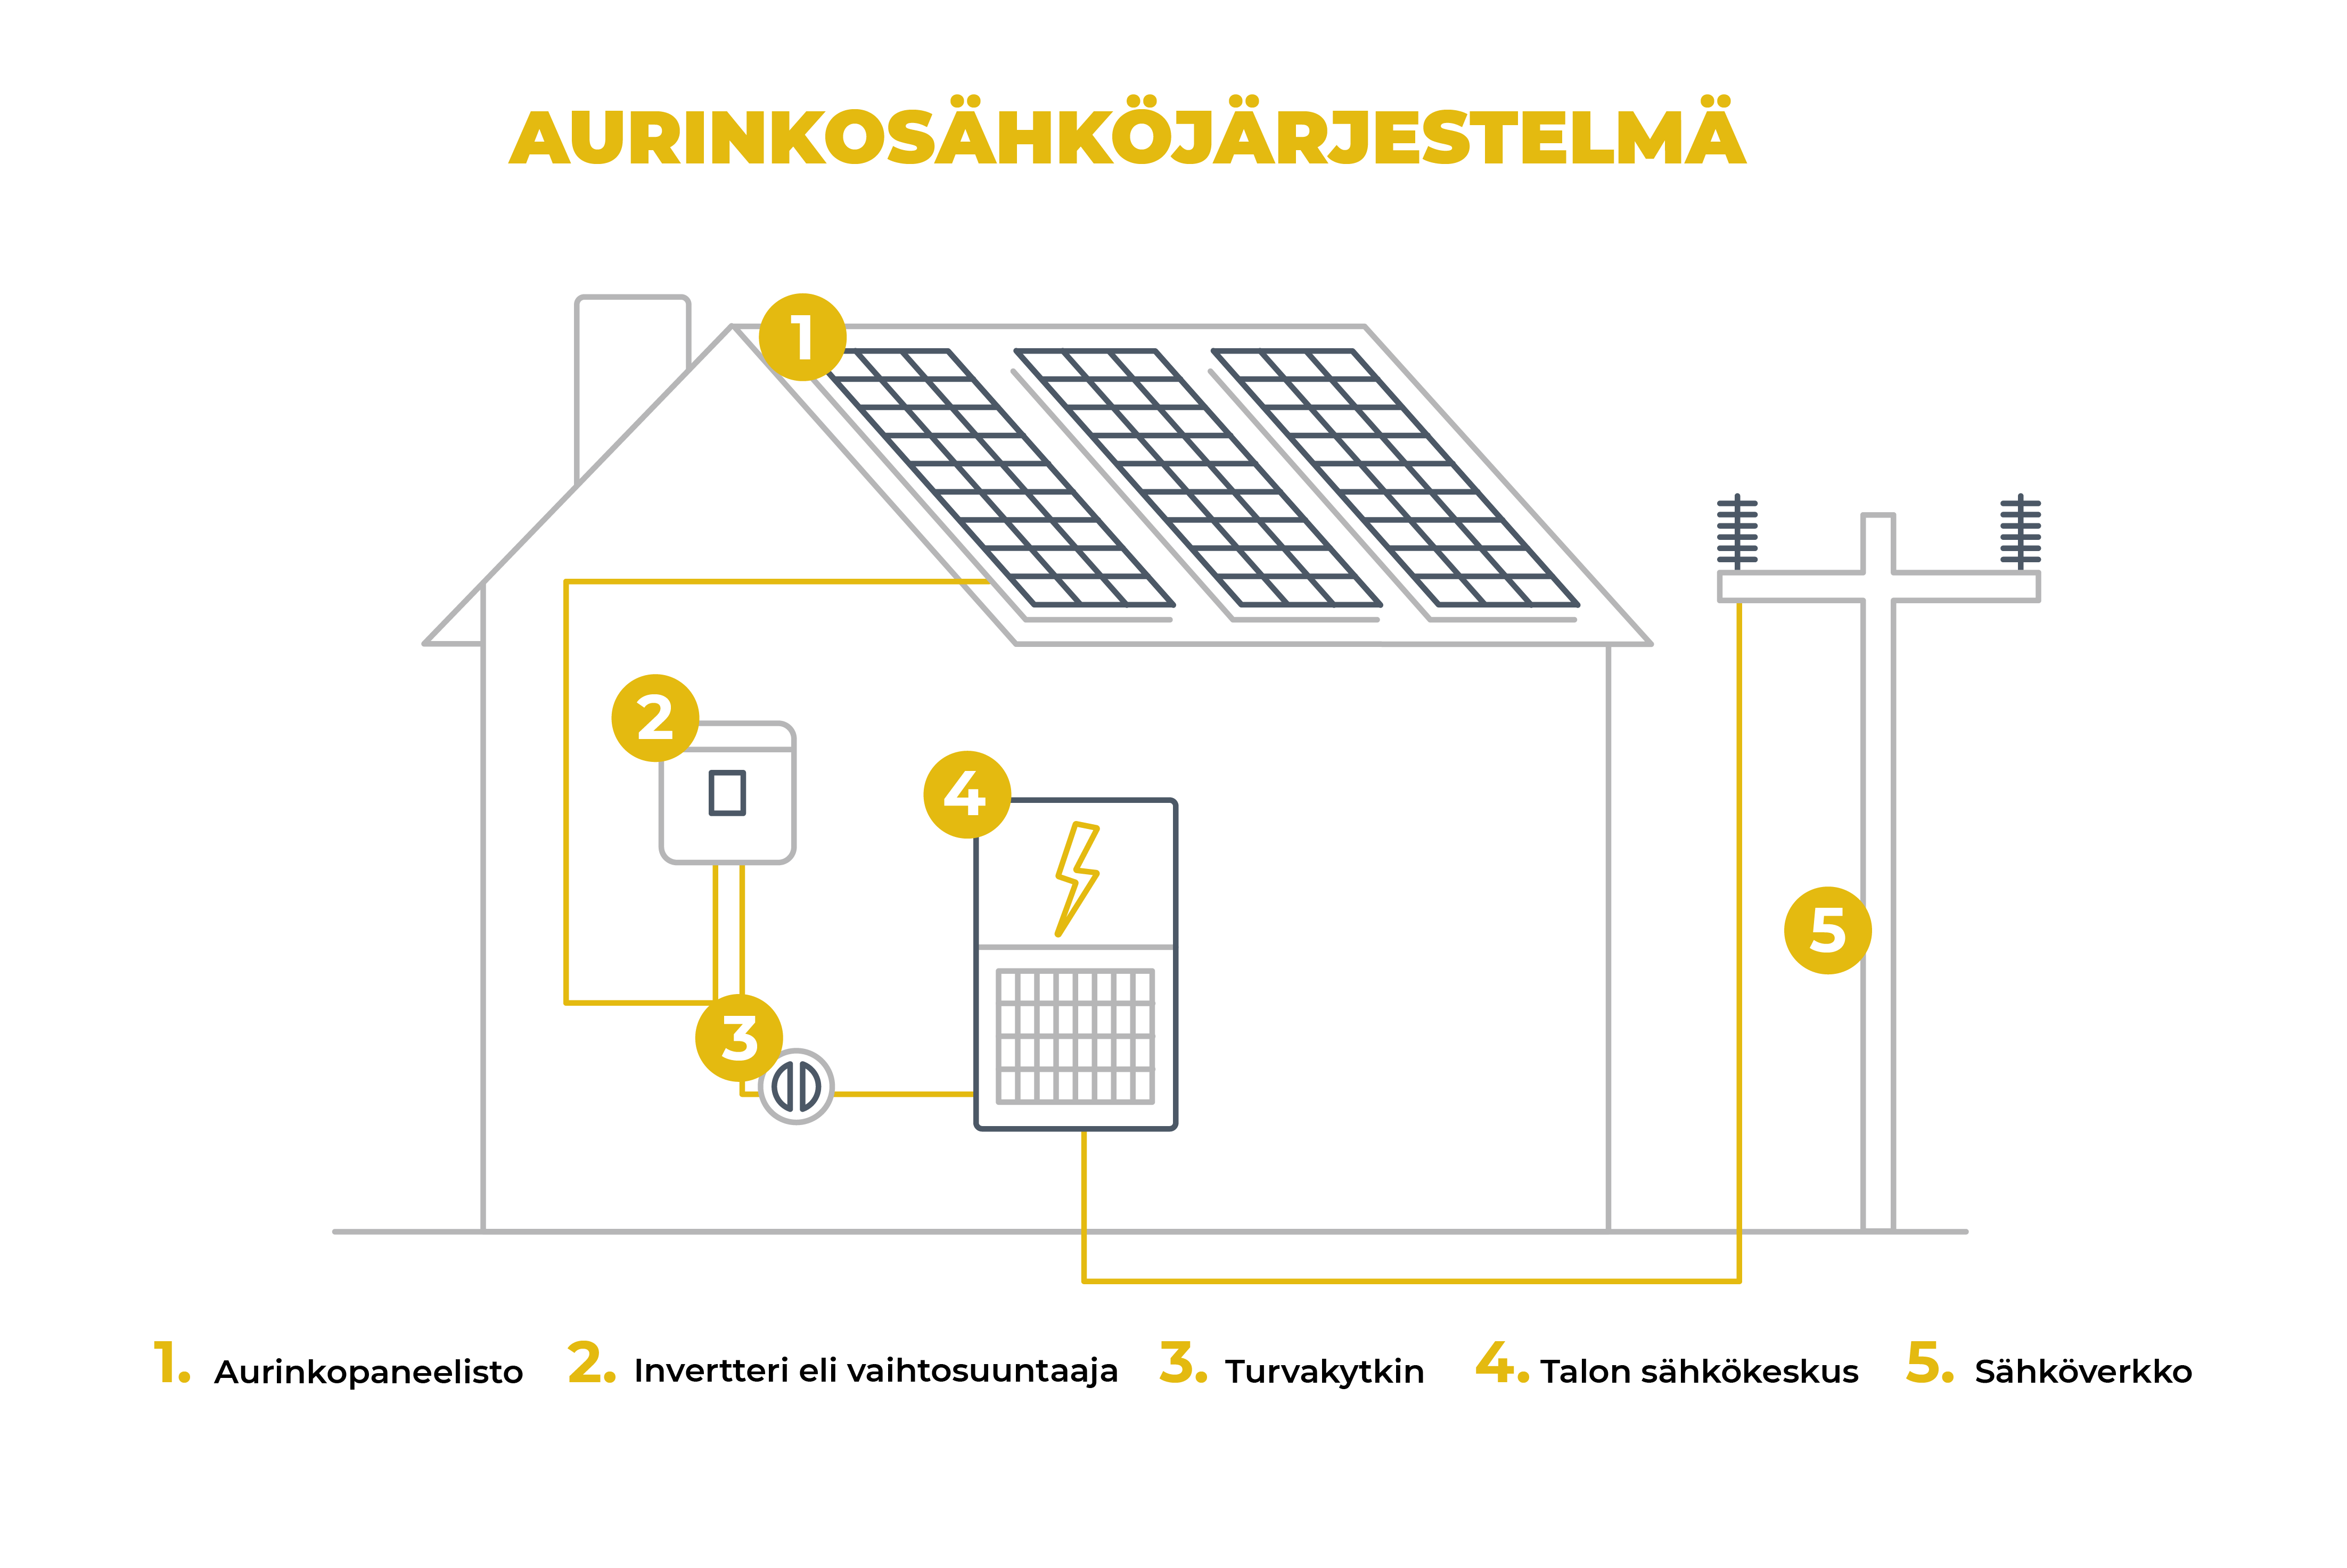 Burgundy Artificial arithmetic Aurinkosähköjärjestelmään kuuluvat laitteet - Aurinkosähköä kotiin